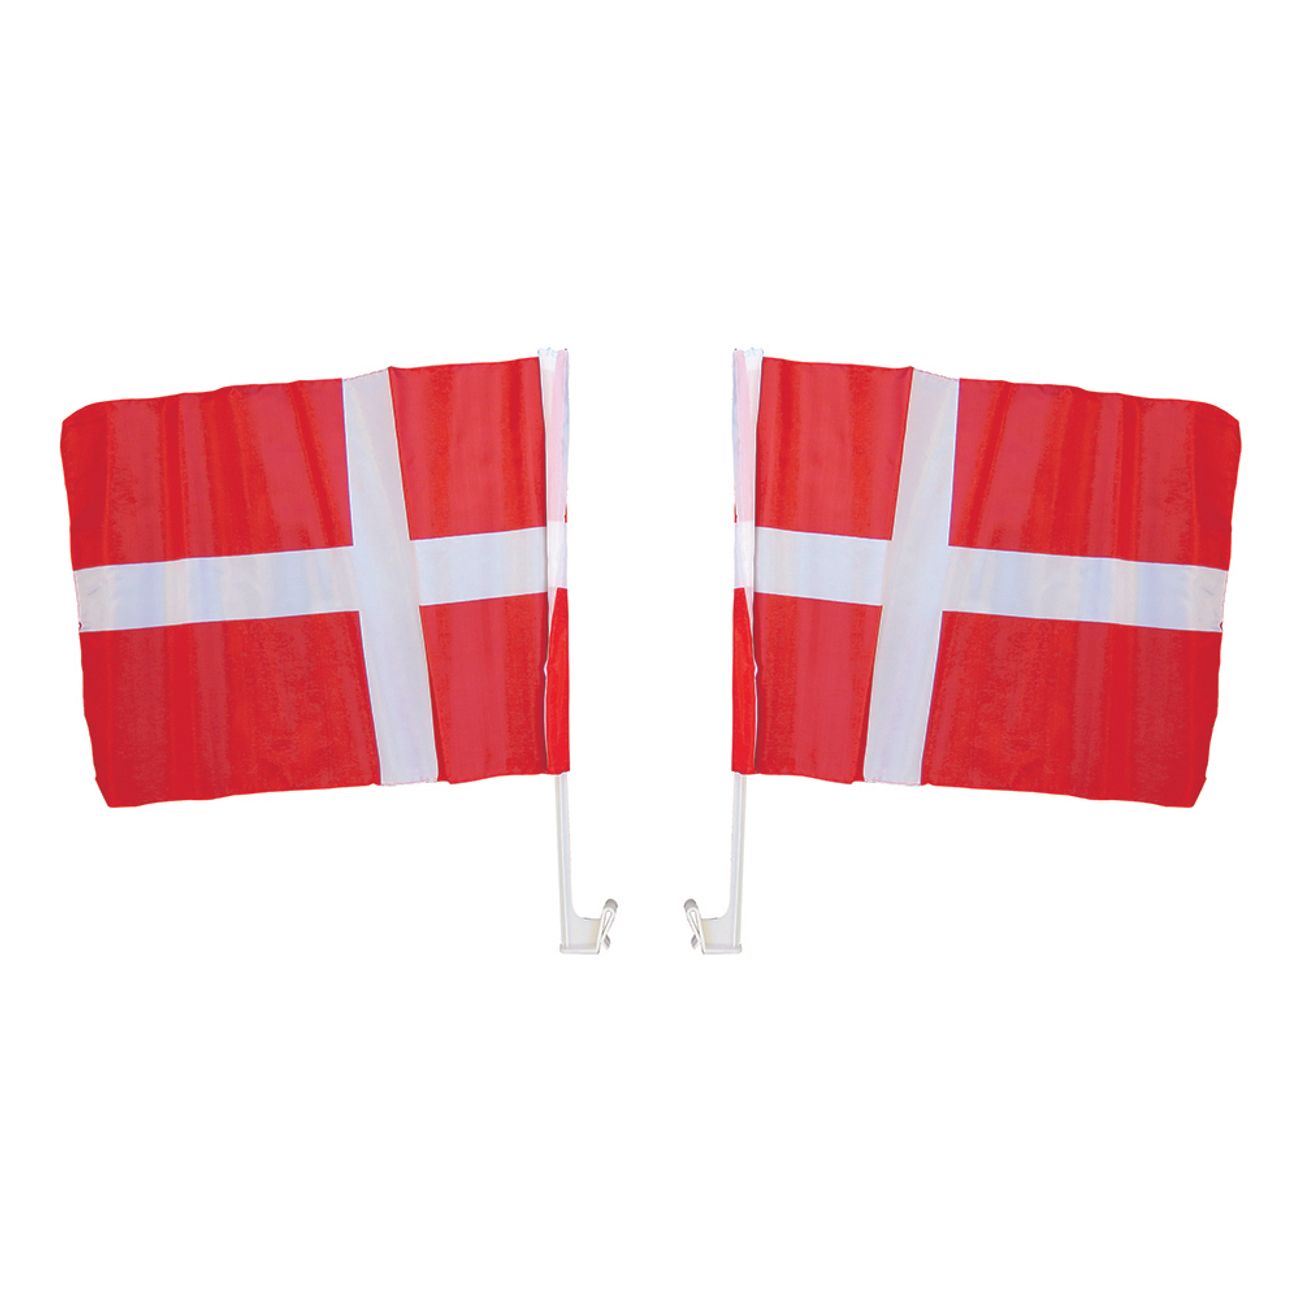 bilflaggor-danmark-1